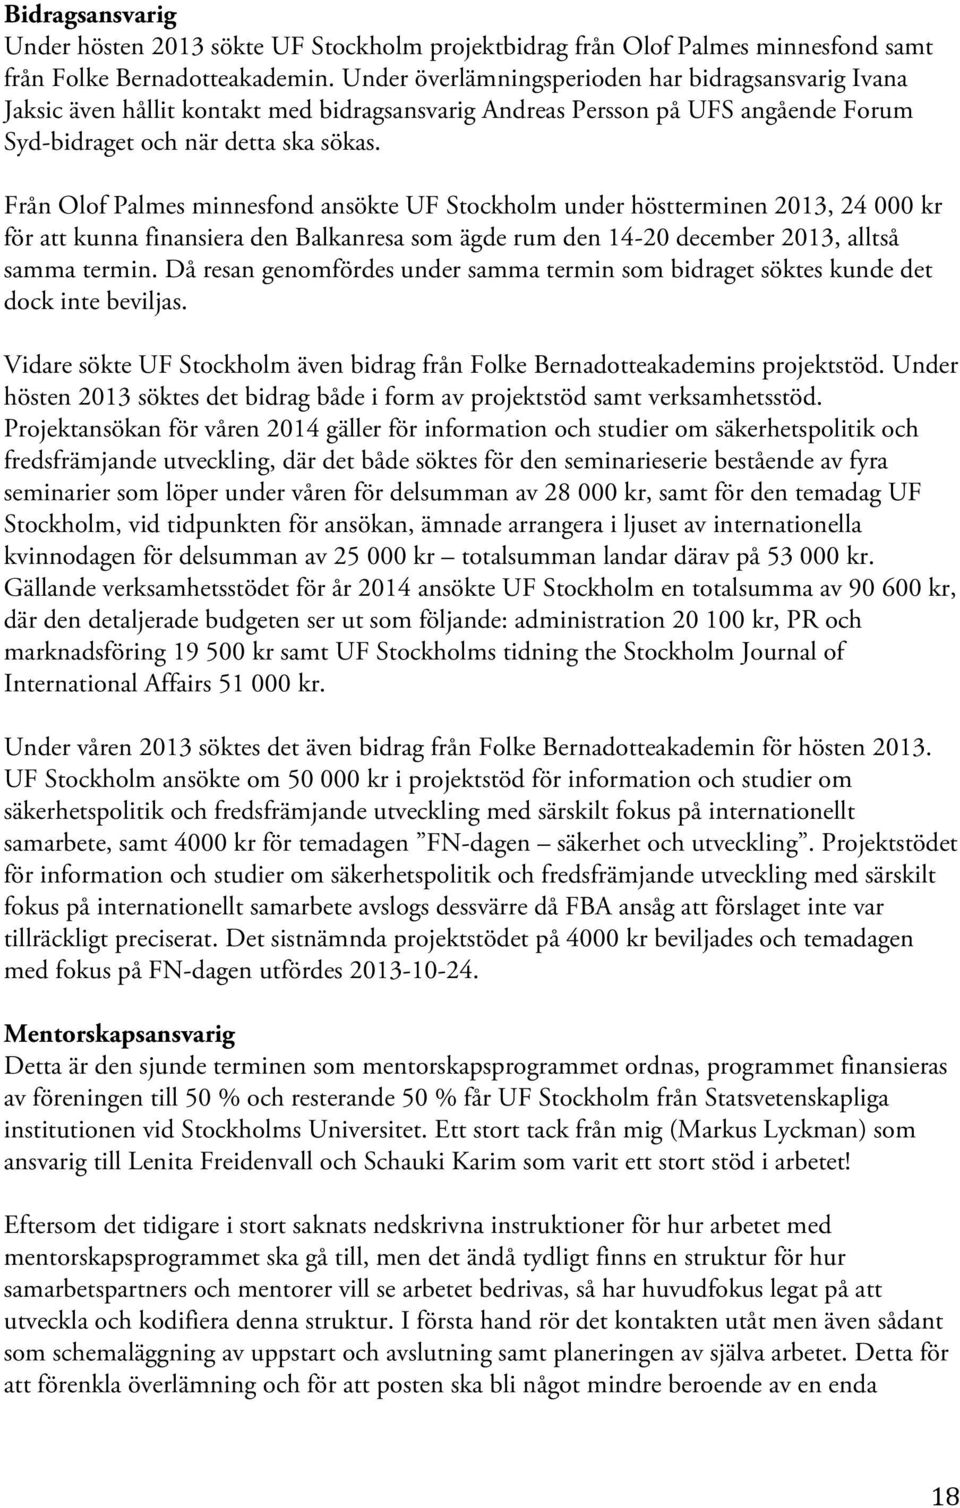 Från Olof Palmes minnesfond ansökte UF Stockholm under höstterminen 2013, 24 000 kr för att kunna finansiera den Balkanresa som ägde rum den 14-20 december 2013, alltså samma termin.